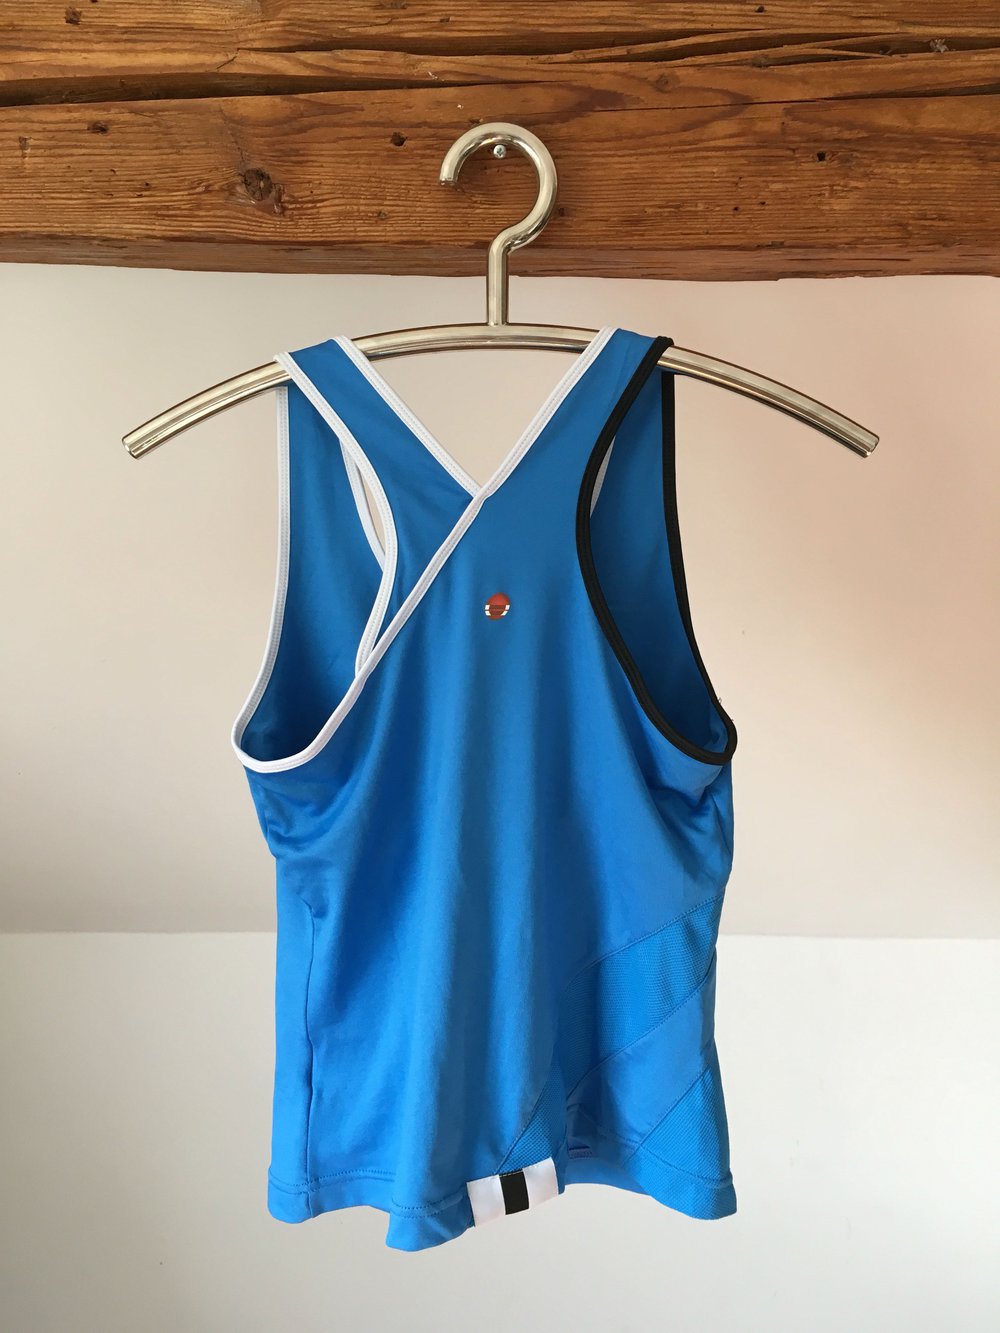 Babolat Sporttop S 36 38 blau Tennis top Fitness Shirt gym Oberteil weiß integrierter BH 